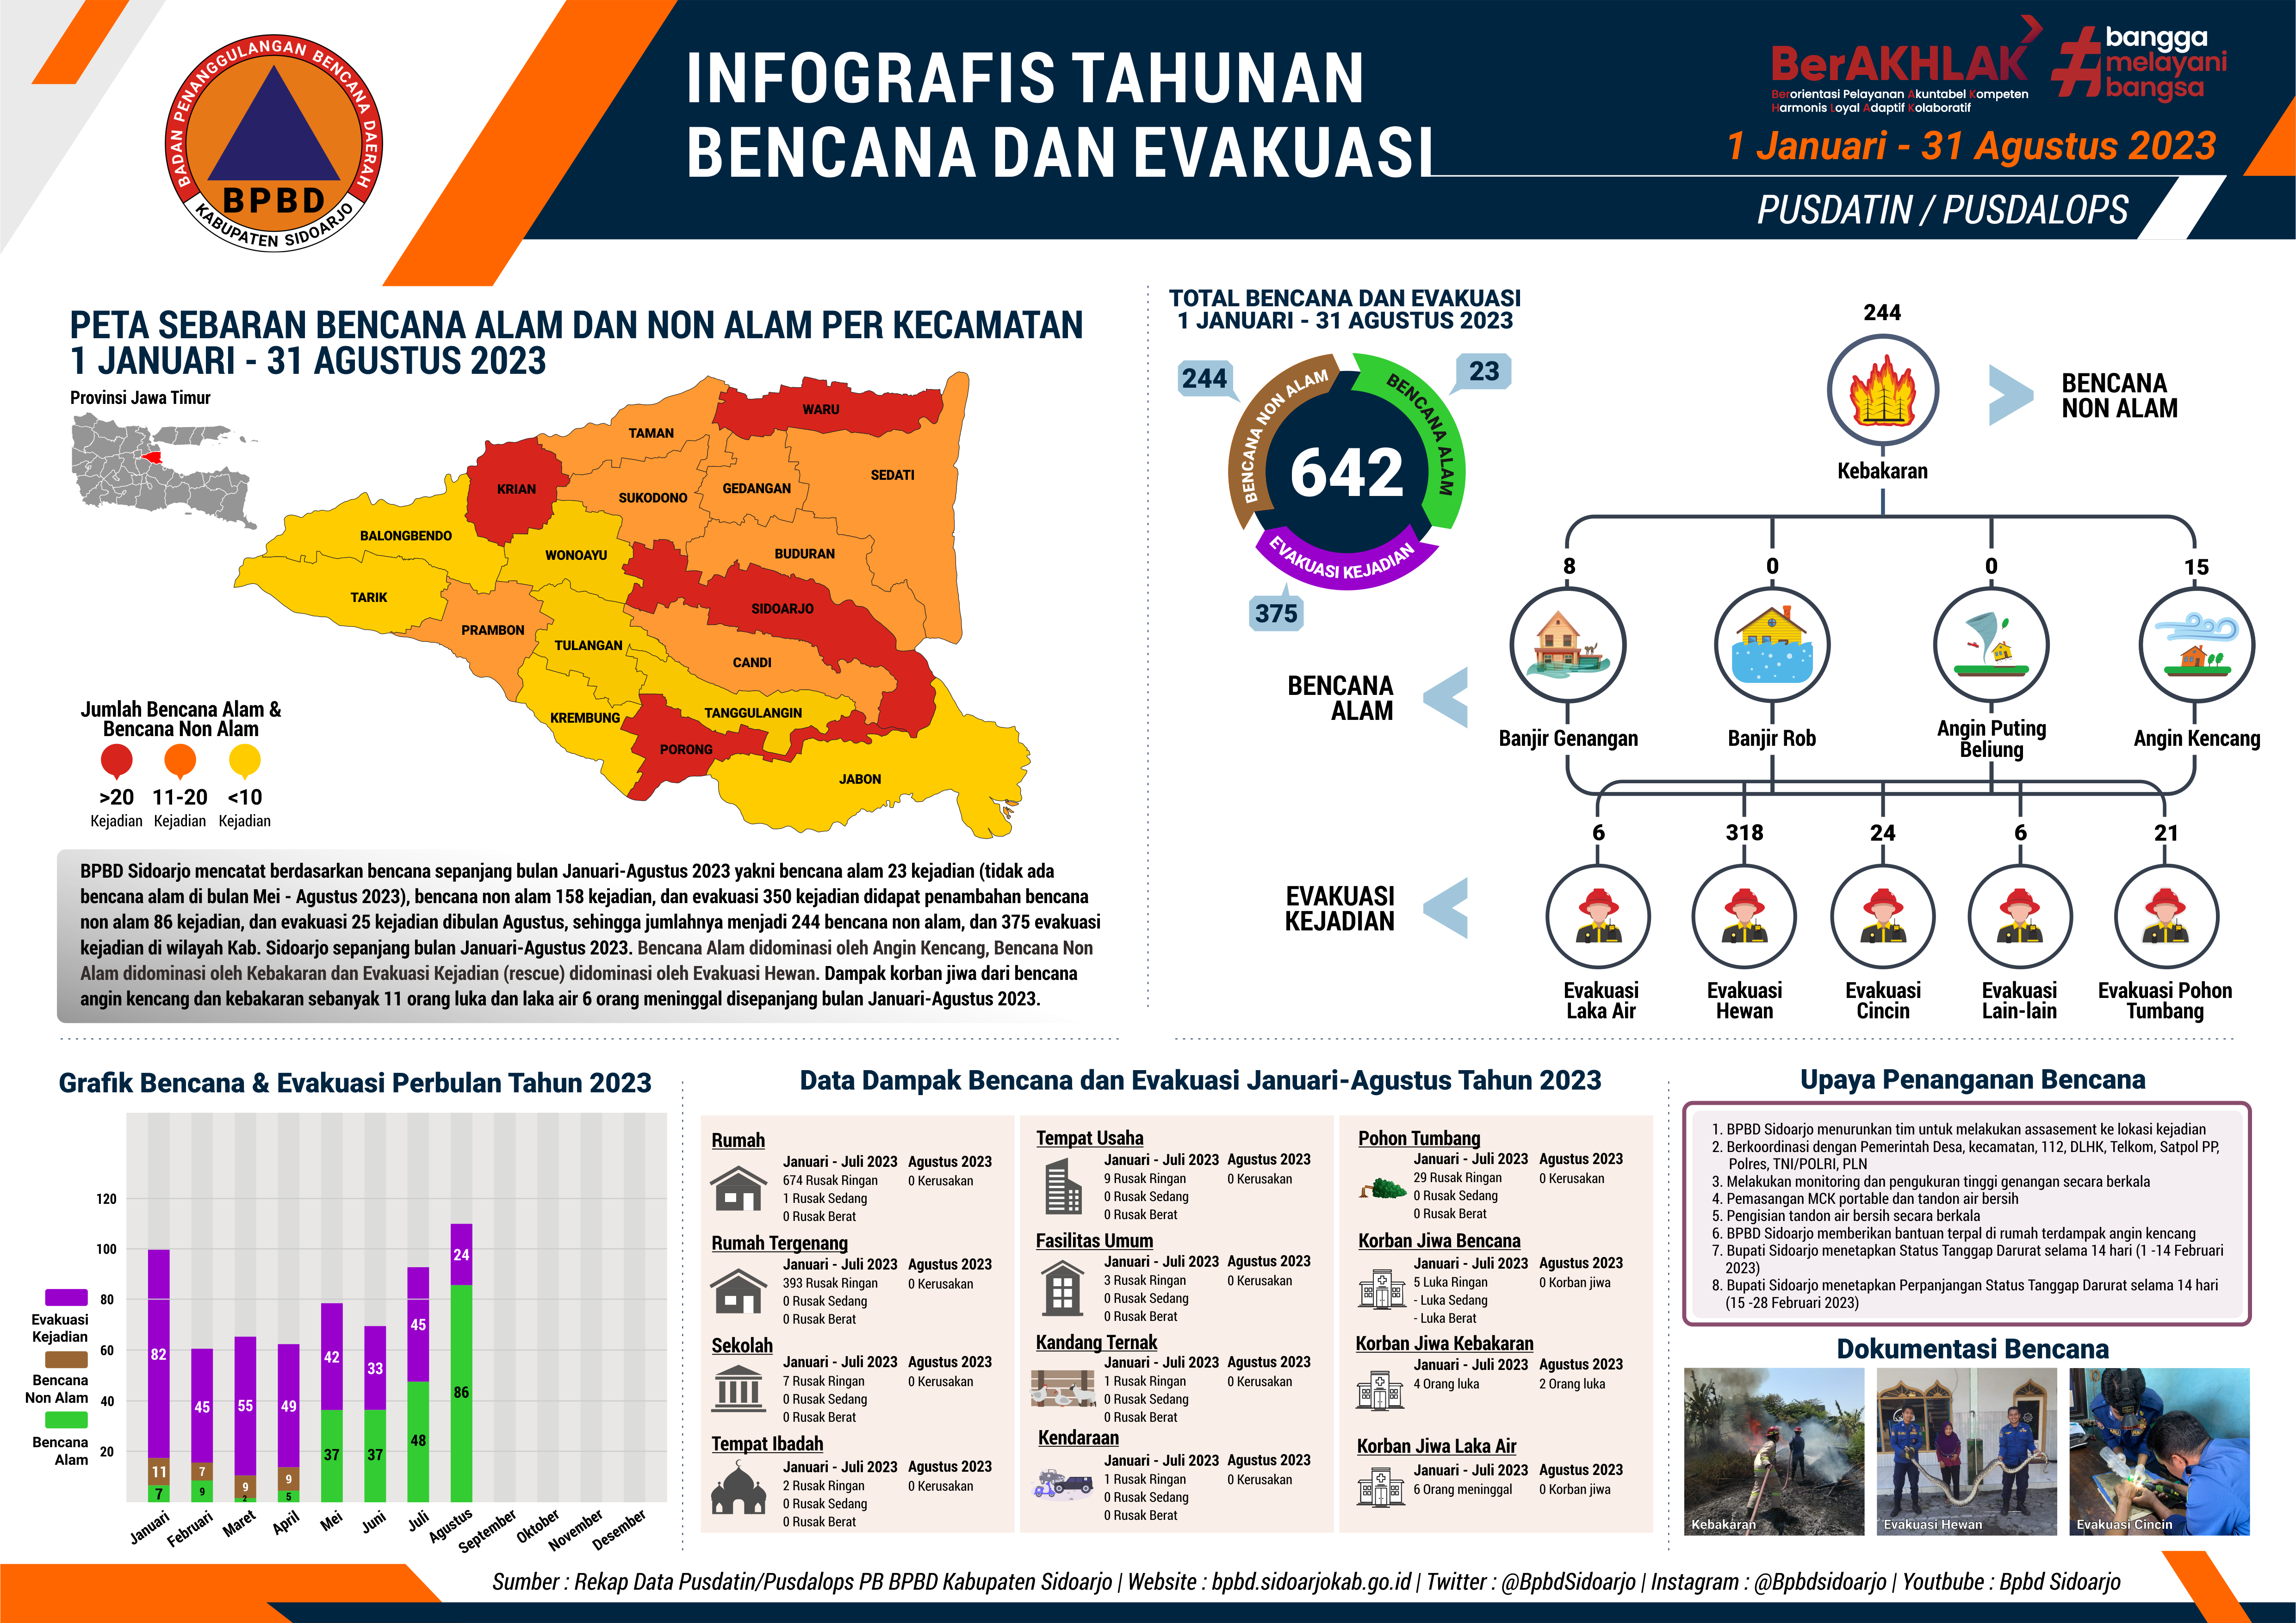 Infografis Tahunan Bencana dan Evakuasi Bulan 1 Januari – 31 Agustus 2023